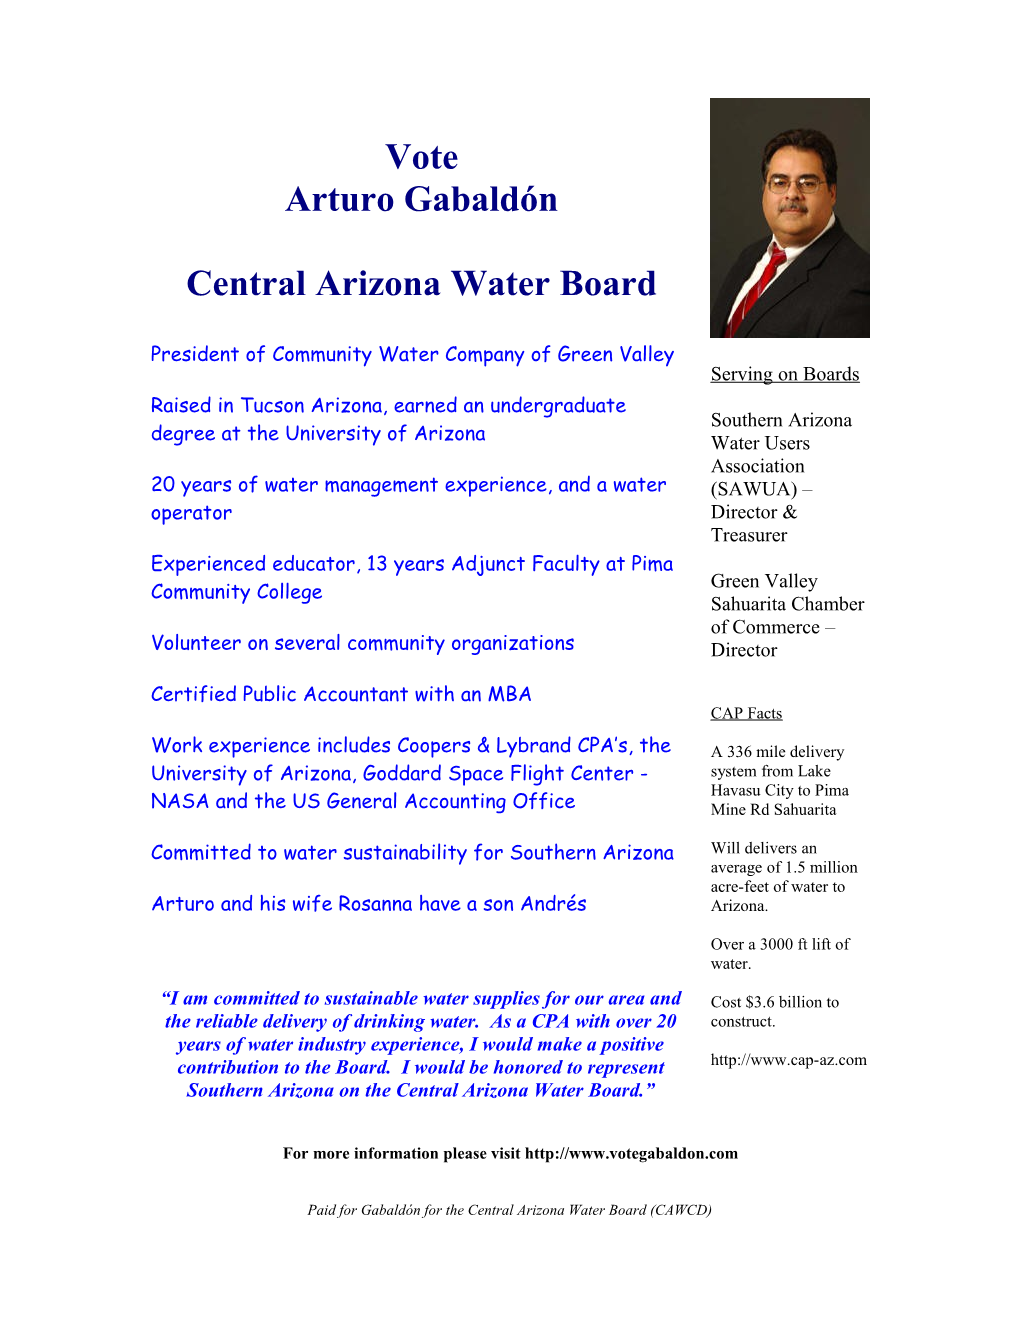 Vote Arturo Gabaldón Central Arizona Water Board